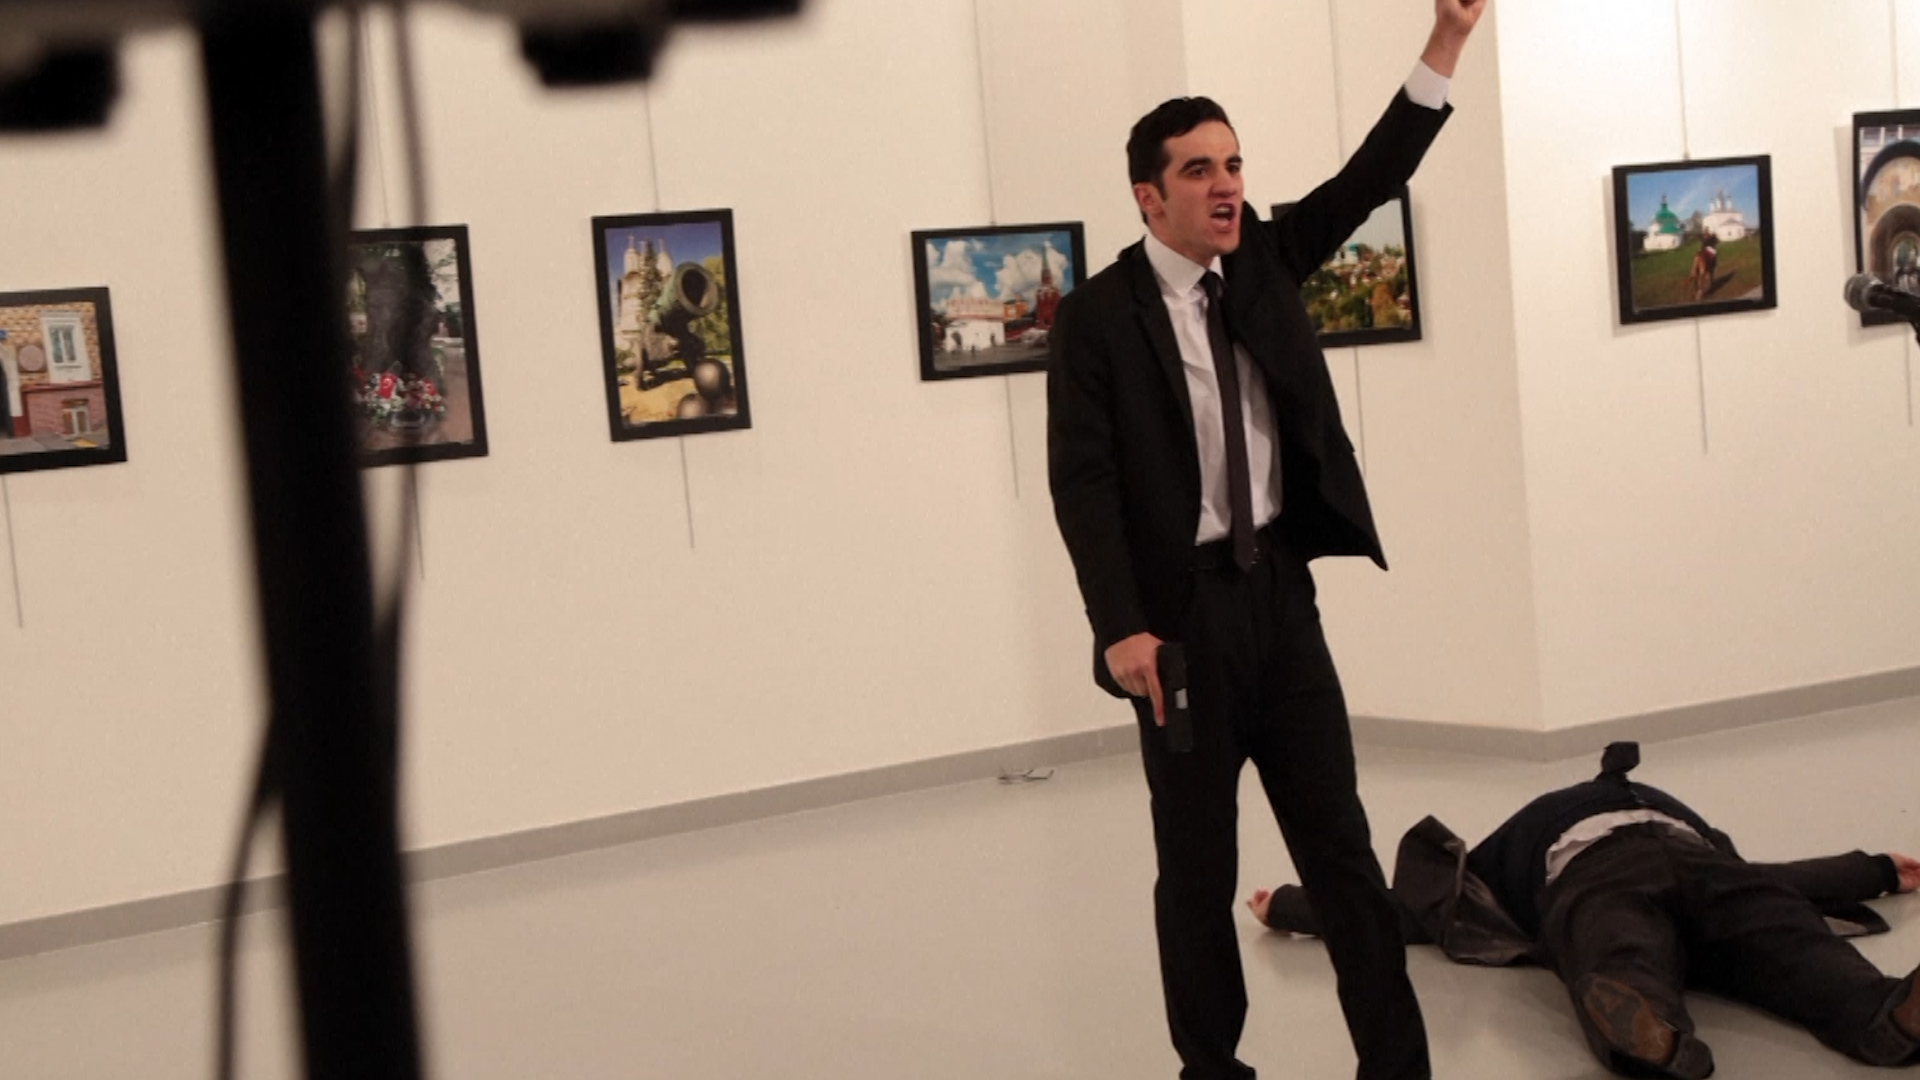 Insiden turut dirakamkan jurufoto yang berada di lokasi untuk pelancaran pertunjukkan seni yang ditaja kedutaan Rusia. Foto - FoxNews